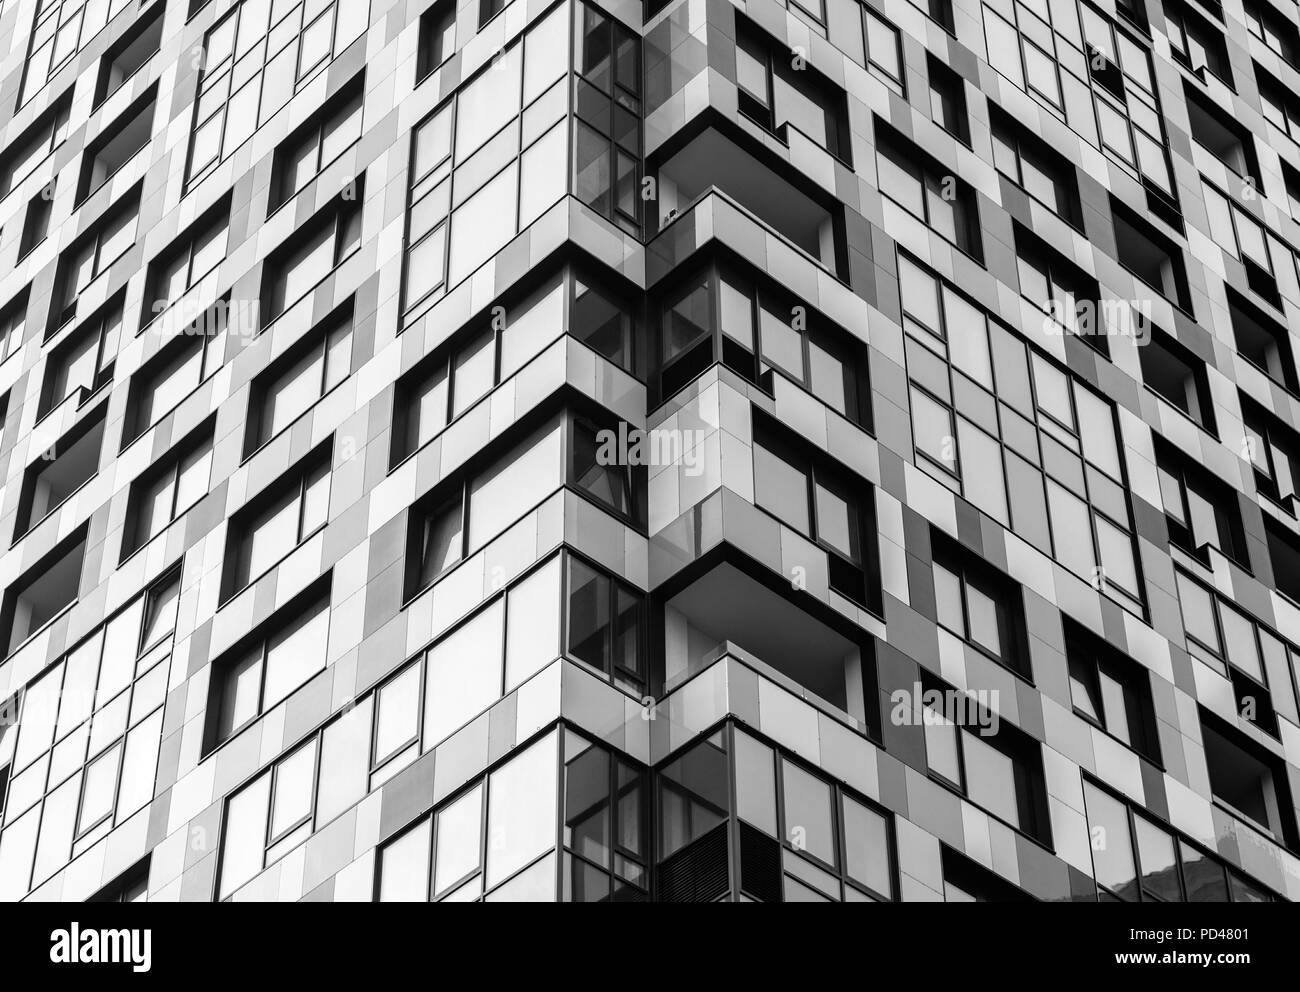 Façade moderne. La façade d'un bâtiment moderne dans des tons de gris Banque D'Images